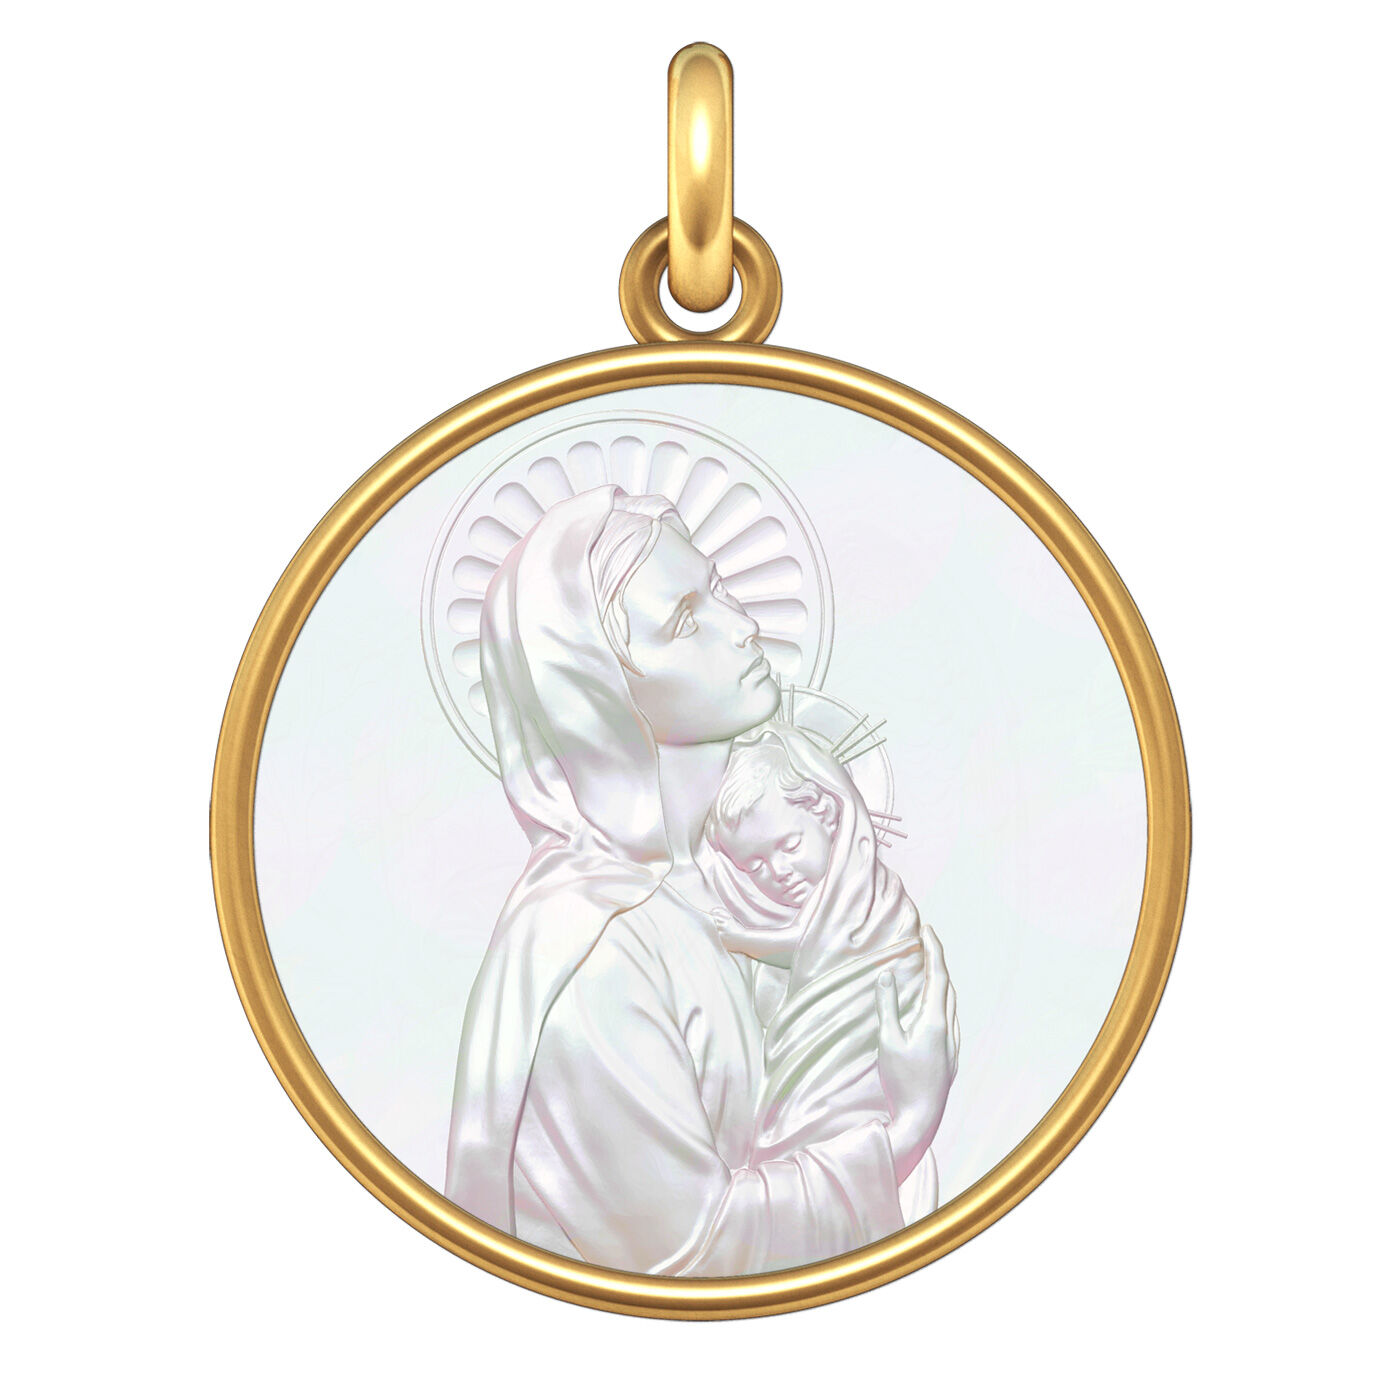 Manufacture Mayaud Medaille bapteme Vierge à l'Enfant- or et nacre